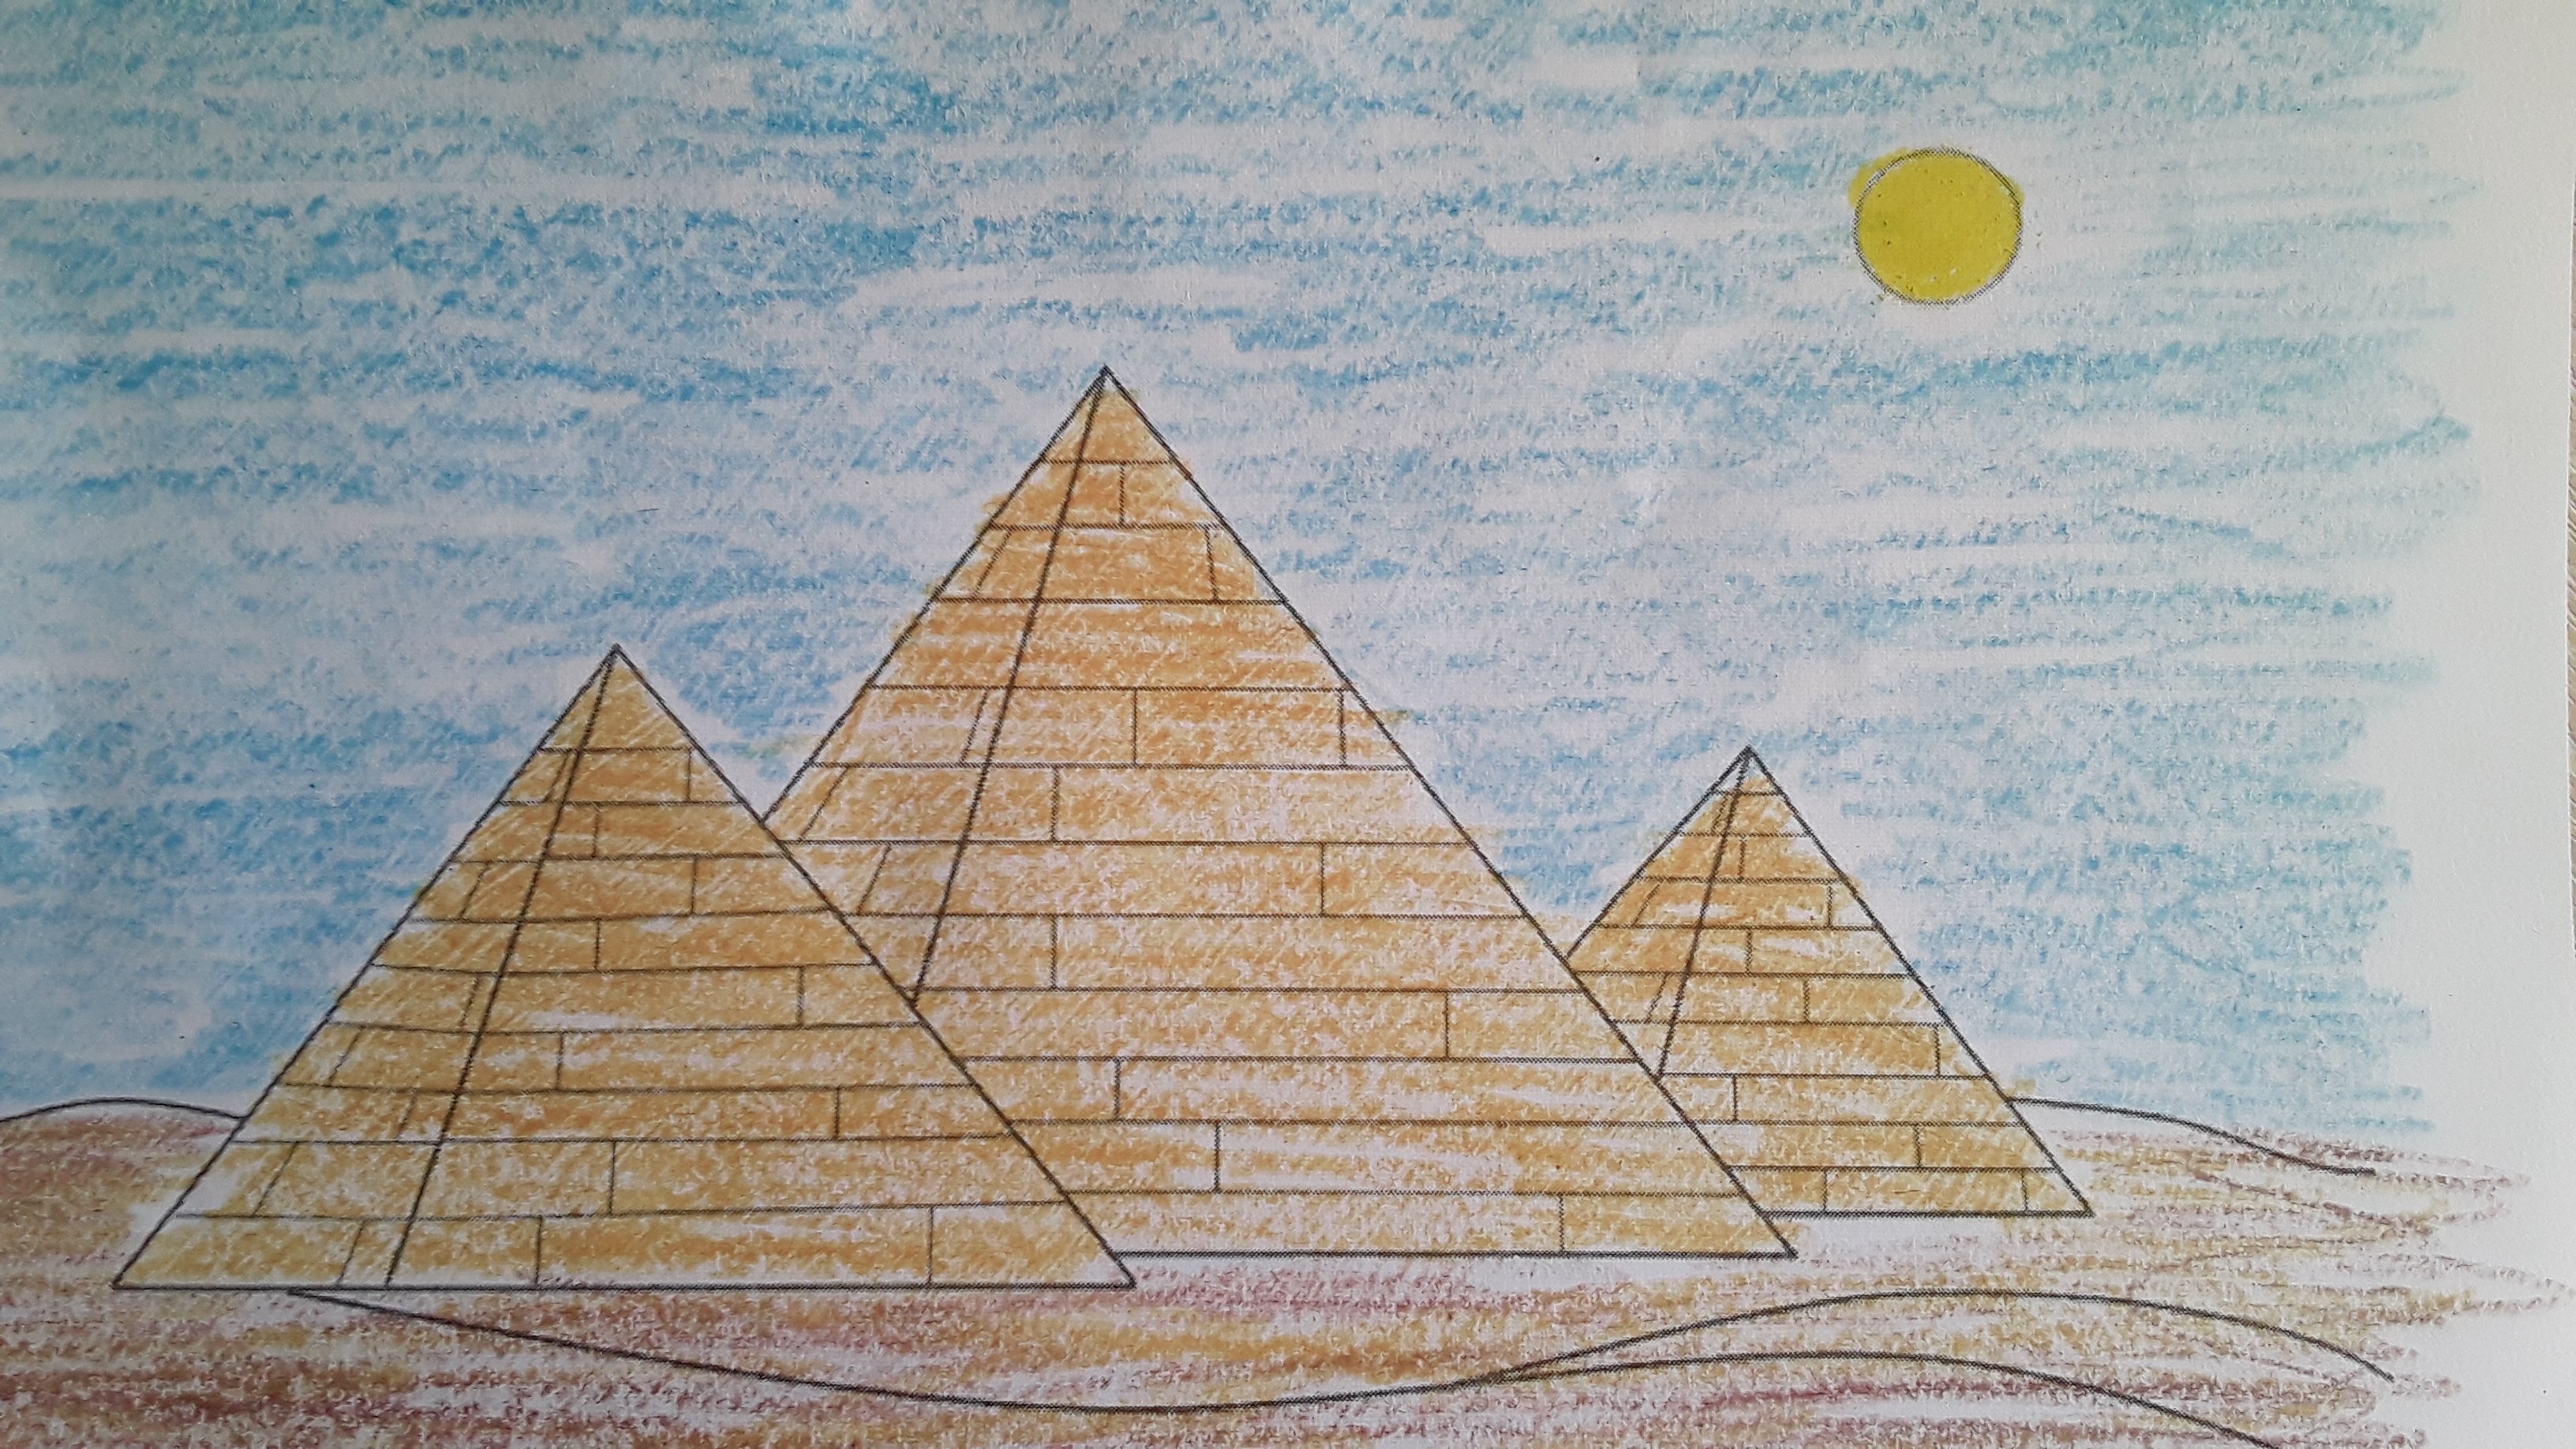 Пирамида Хеопса 1 из 7 чудес света